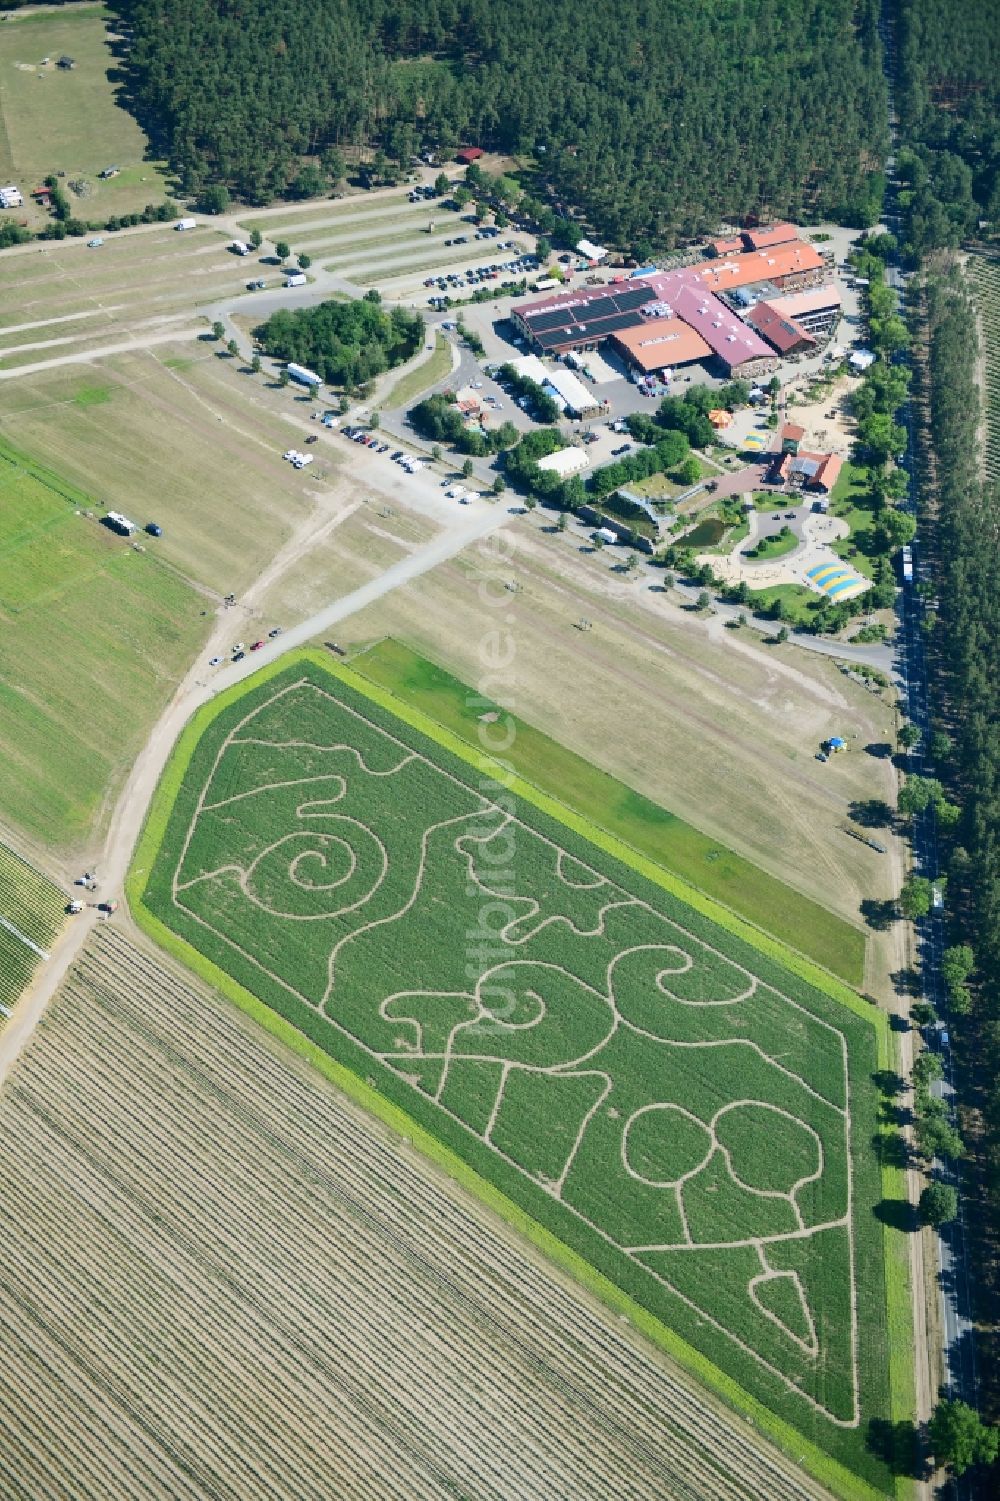 Klaistow aus der Vogelperspektive: Irrgarten - Labyrinth mit den Umrissen am Spargel- und Erlebnishof Klaistow auf einem Feld in Klaistow im Bundesland Brandenburg, Deutschland